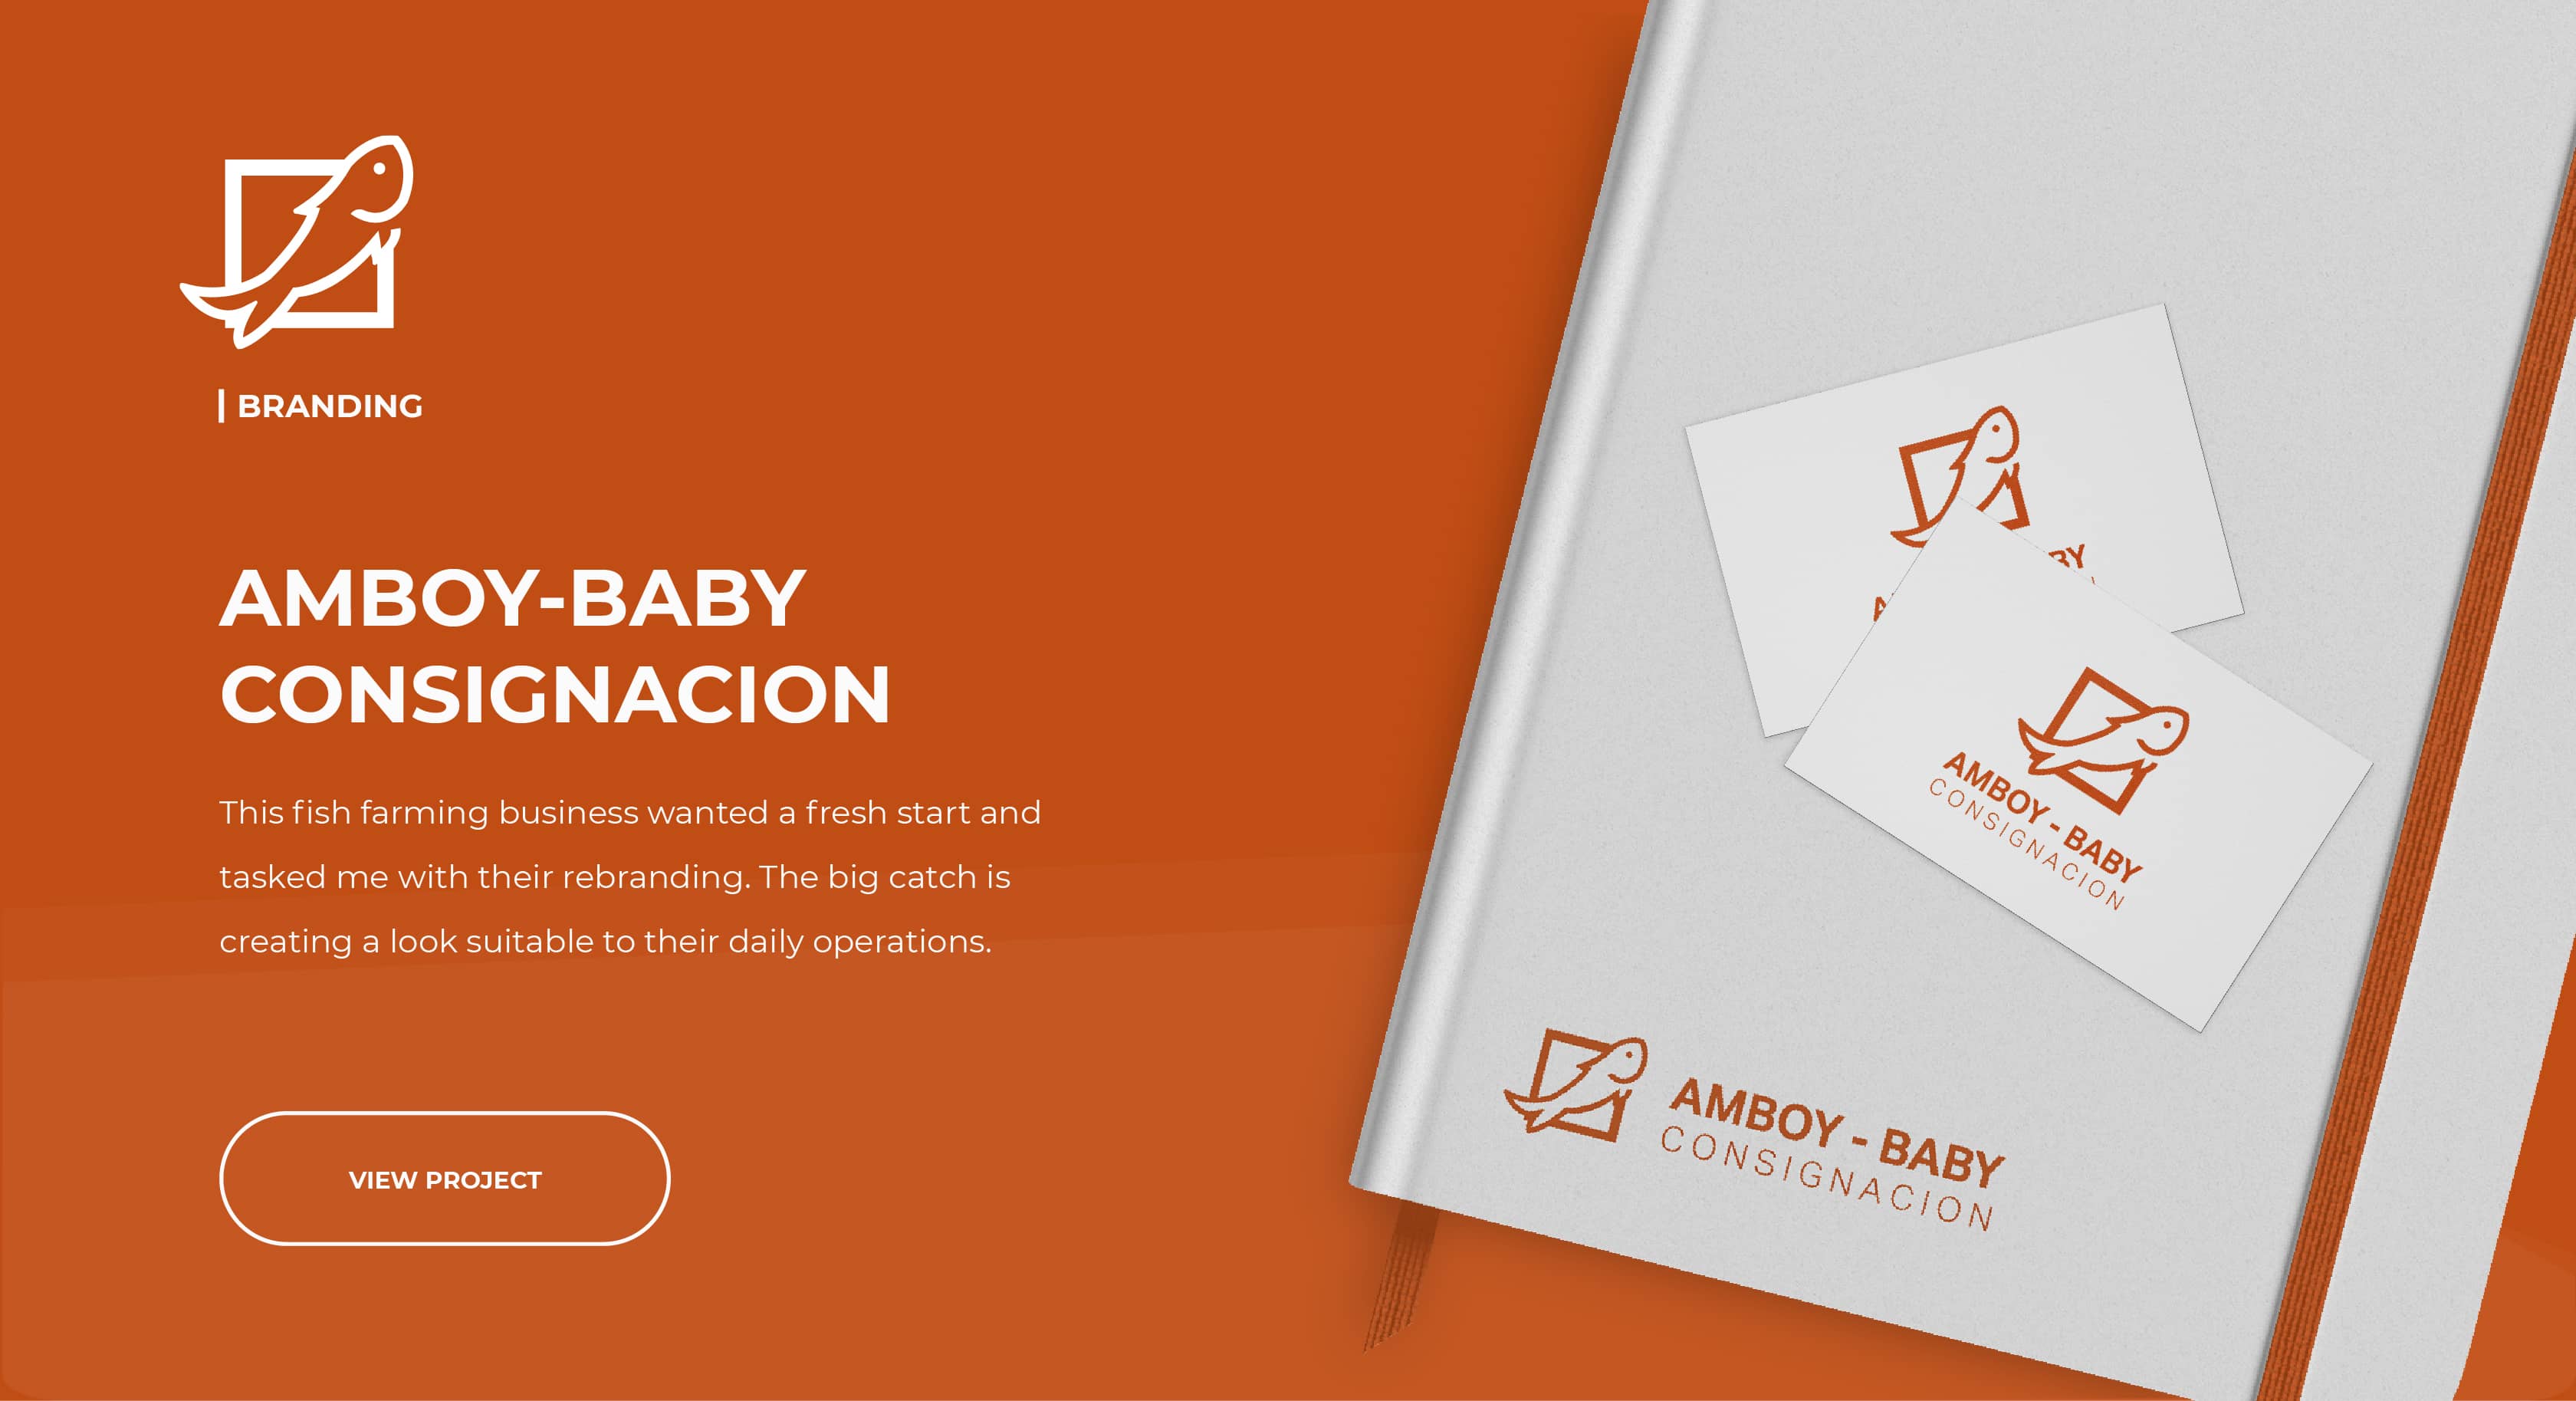 Read about Amboy-Baby Consignacion